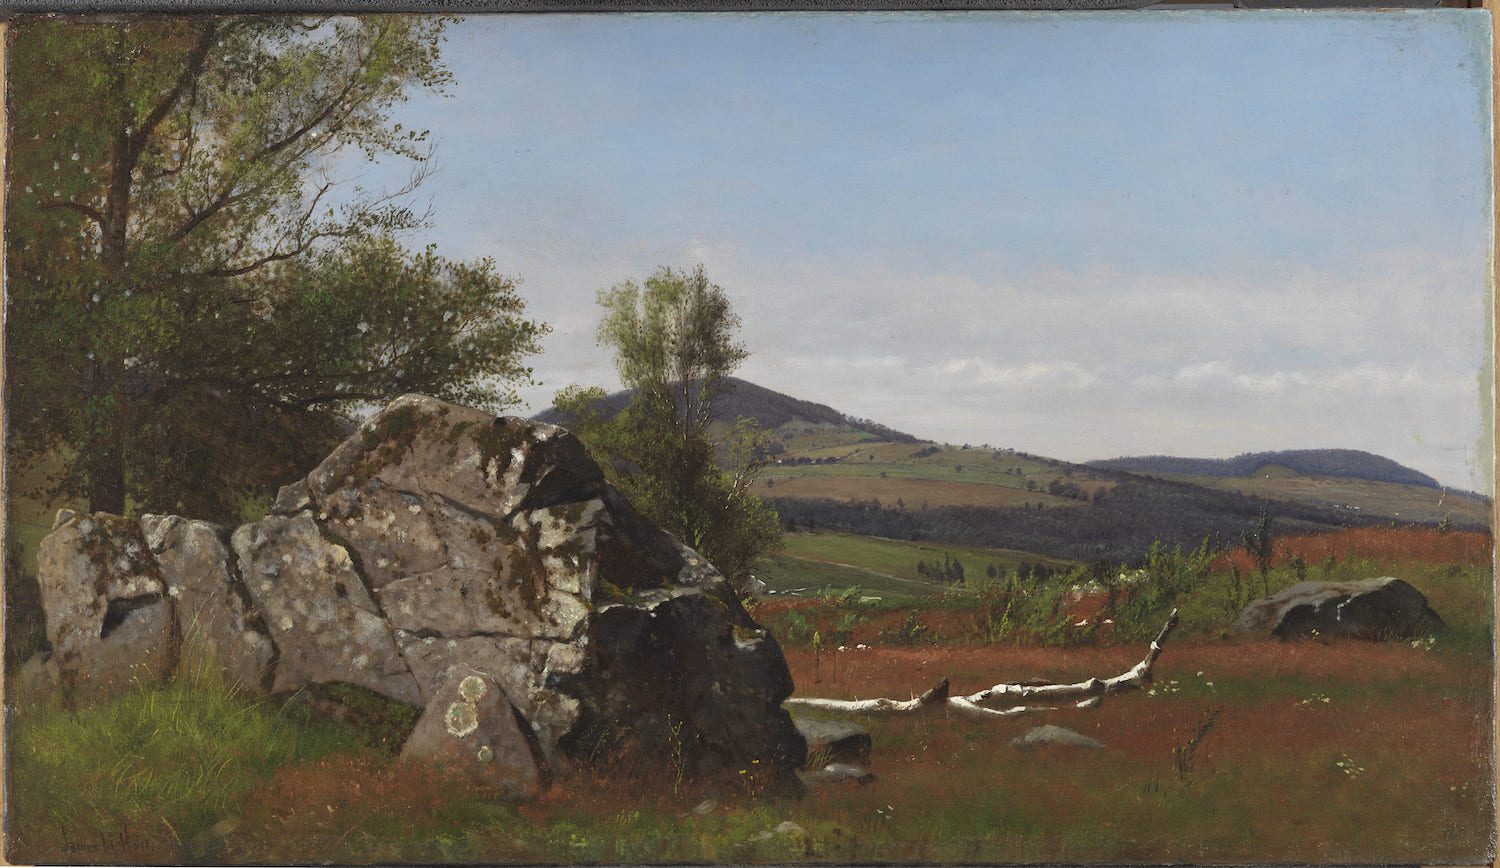 James McDougal Hart. 'Verano en los Catskills' (c. 1865). | Óleo sobre lienzo. Colección Carmen Thyssen.